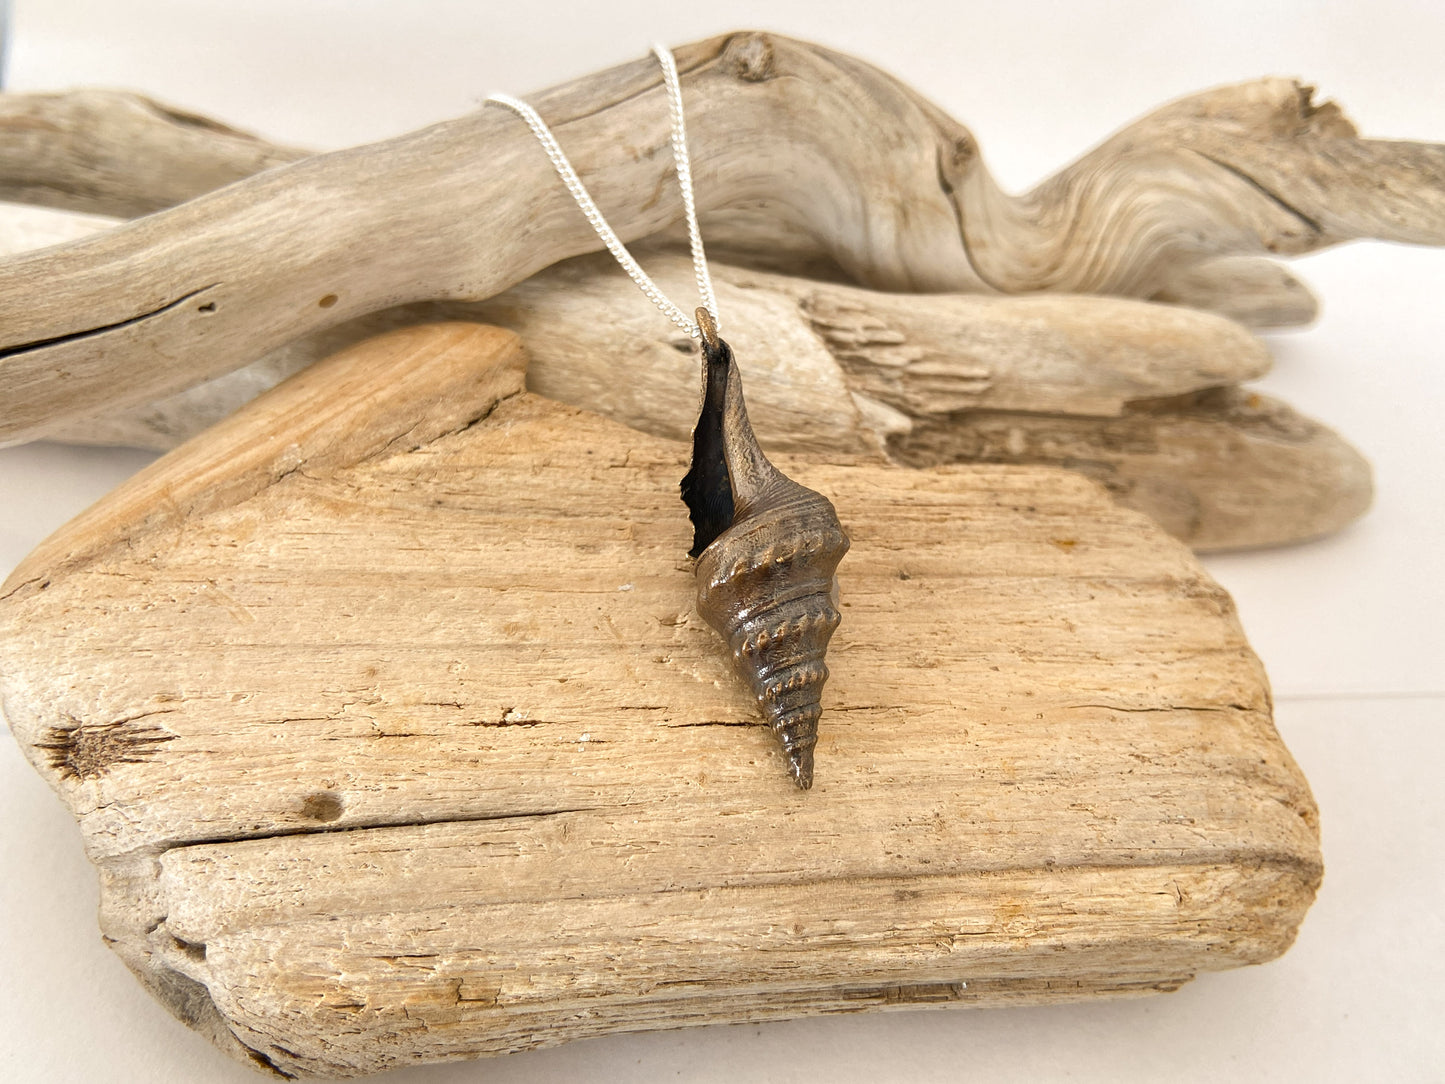 Sea snail - knobbly shell